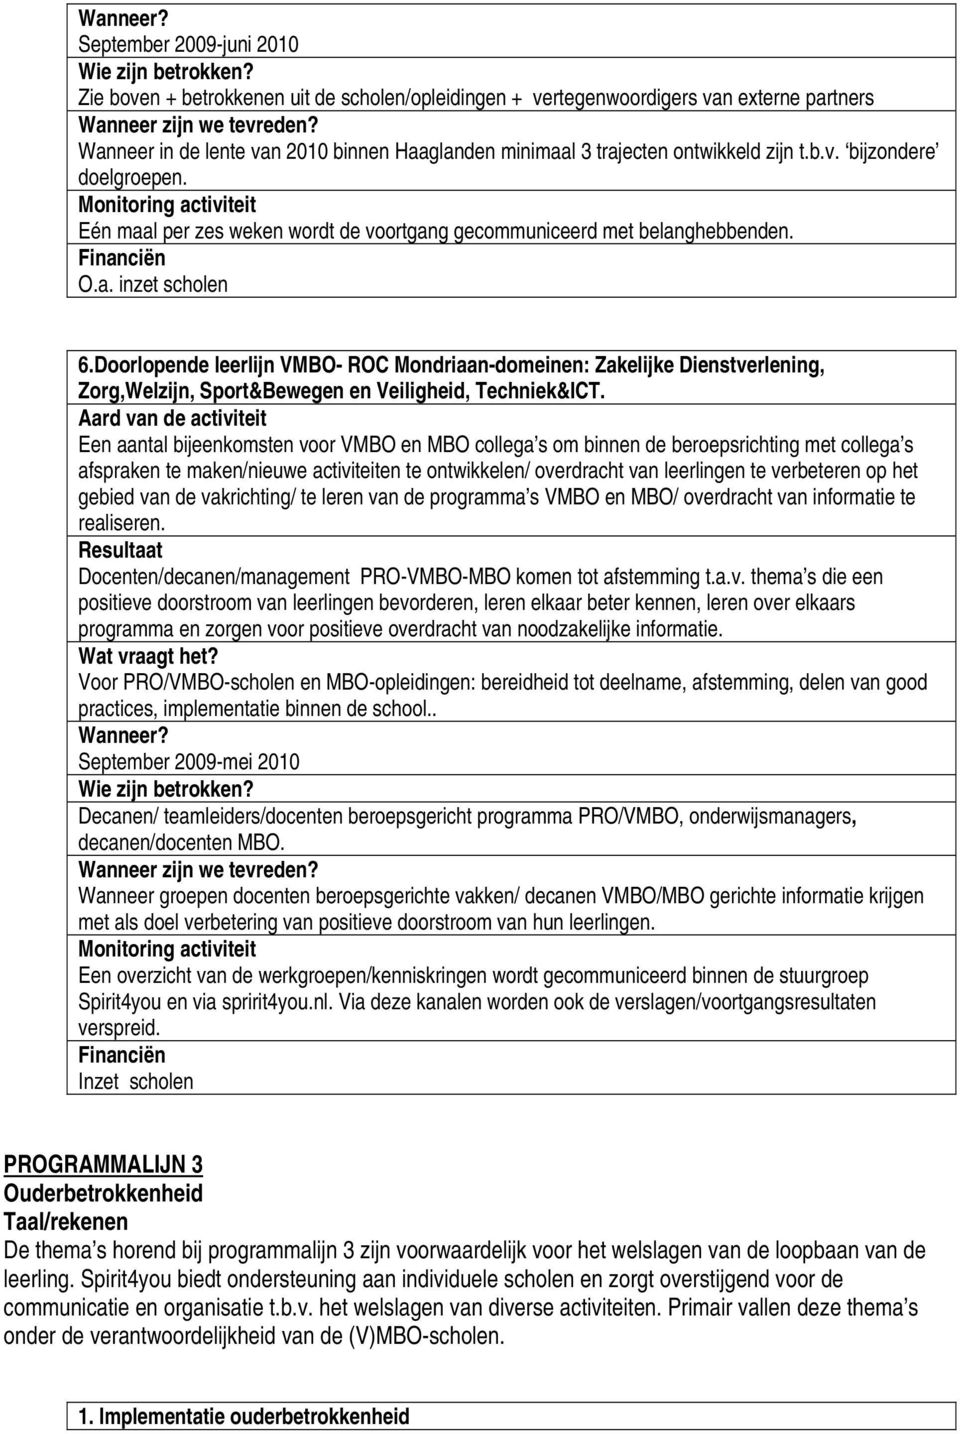 Doorlopende leerlijn VMBO- ROC Mondriaan-domeinen: Zakelijke Dienstverlening, Zorg,Welzijn, Sport&Bewegen en Veiligheid, Techniek&ICT.